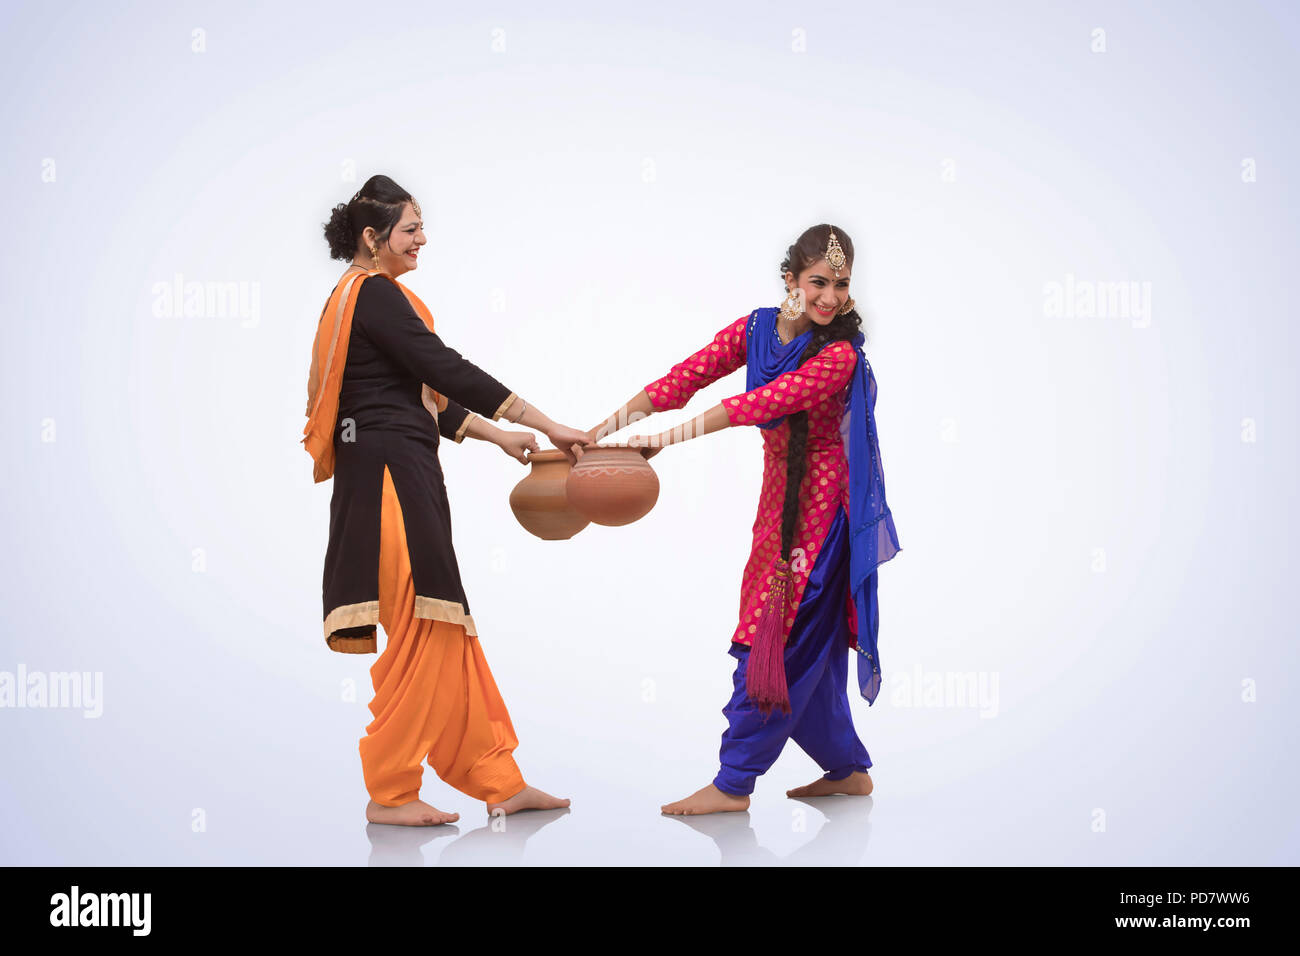 Zwei Frauen tanzen mit irdenen Topf Stockfoto